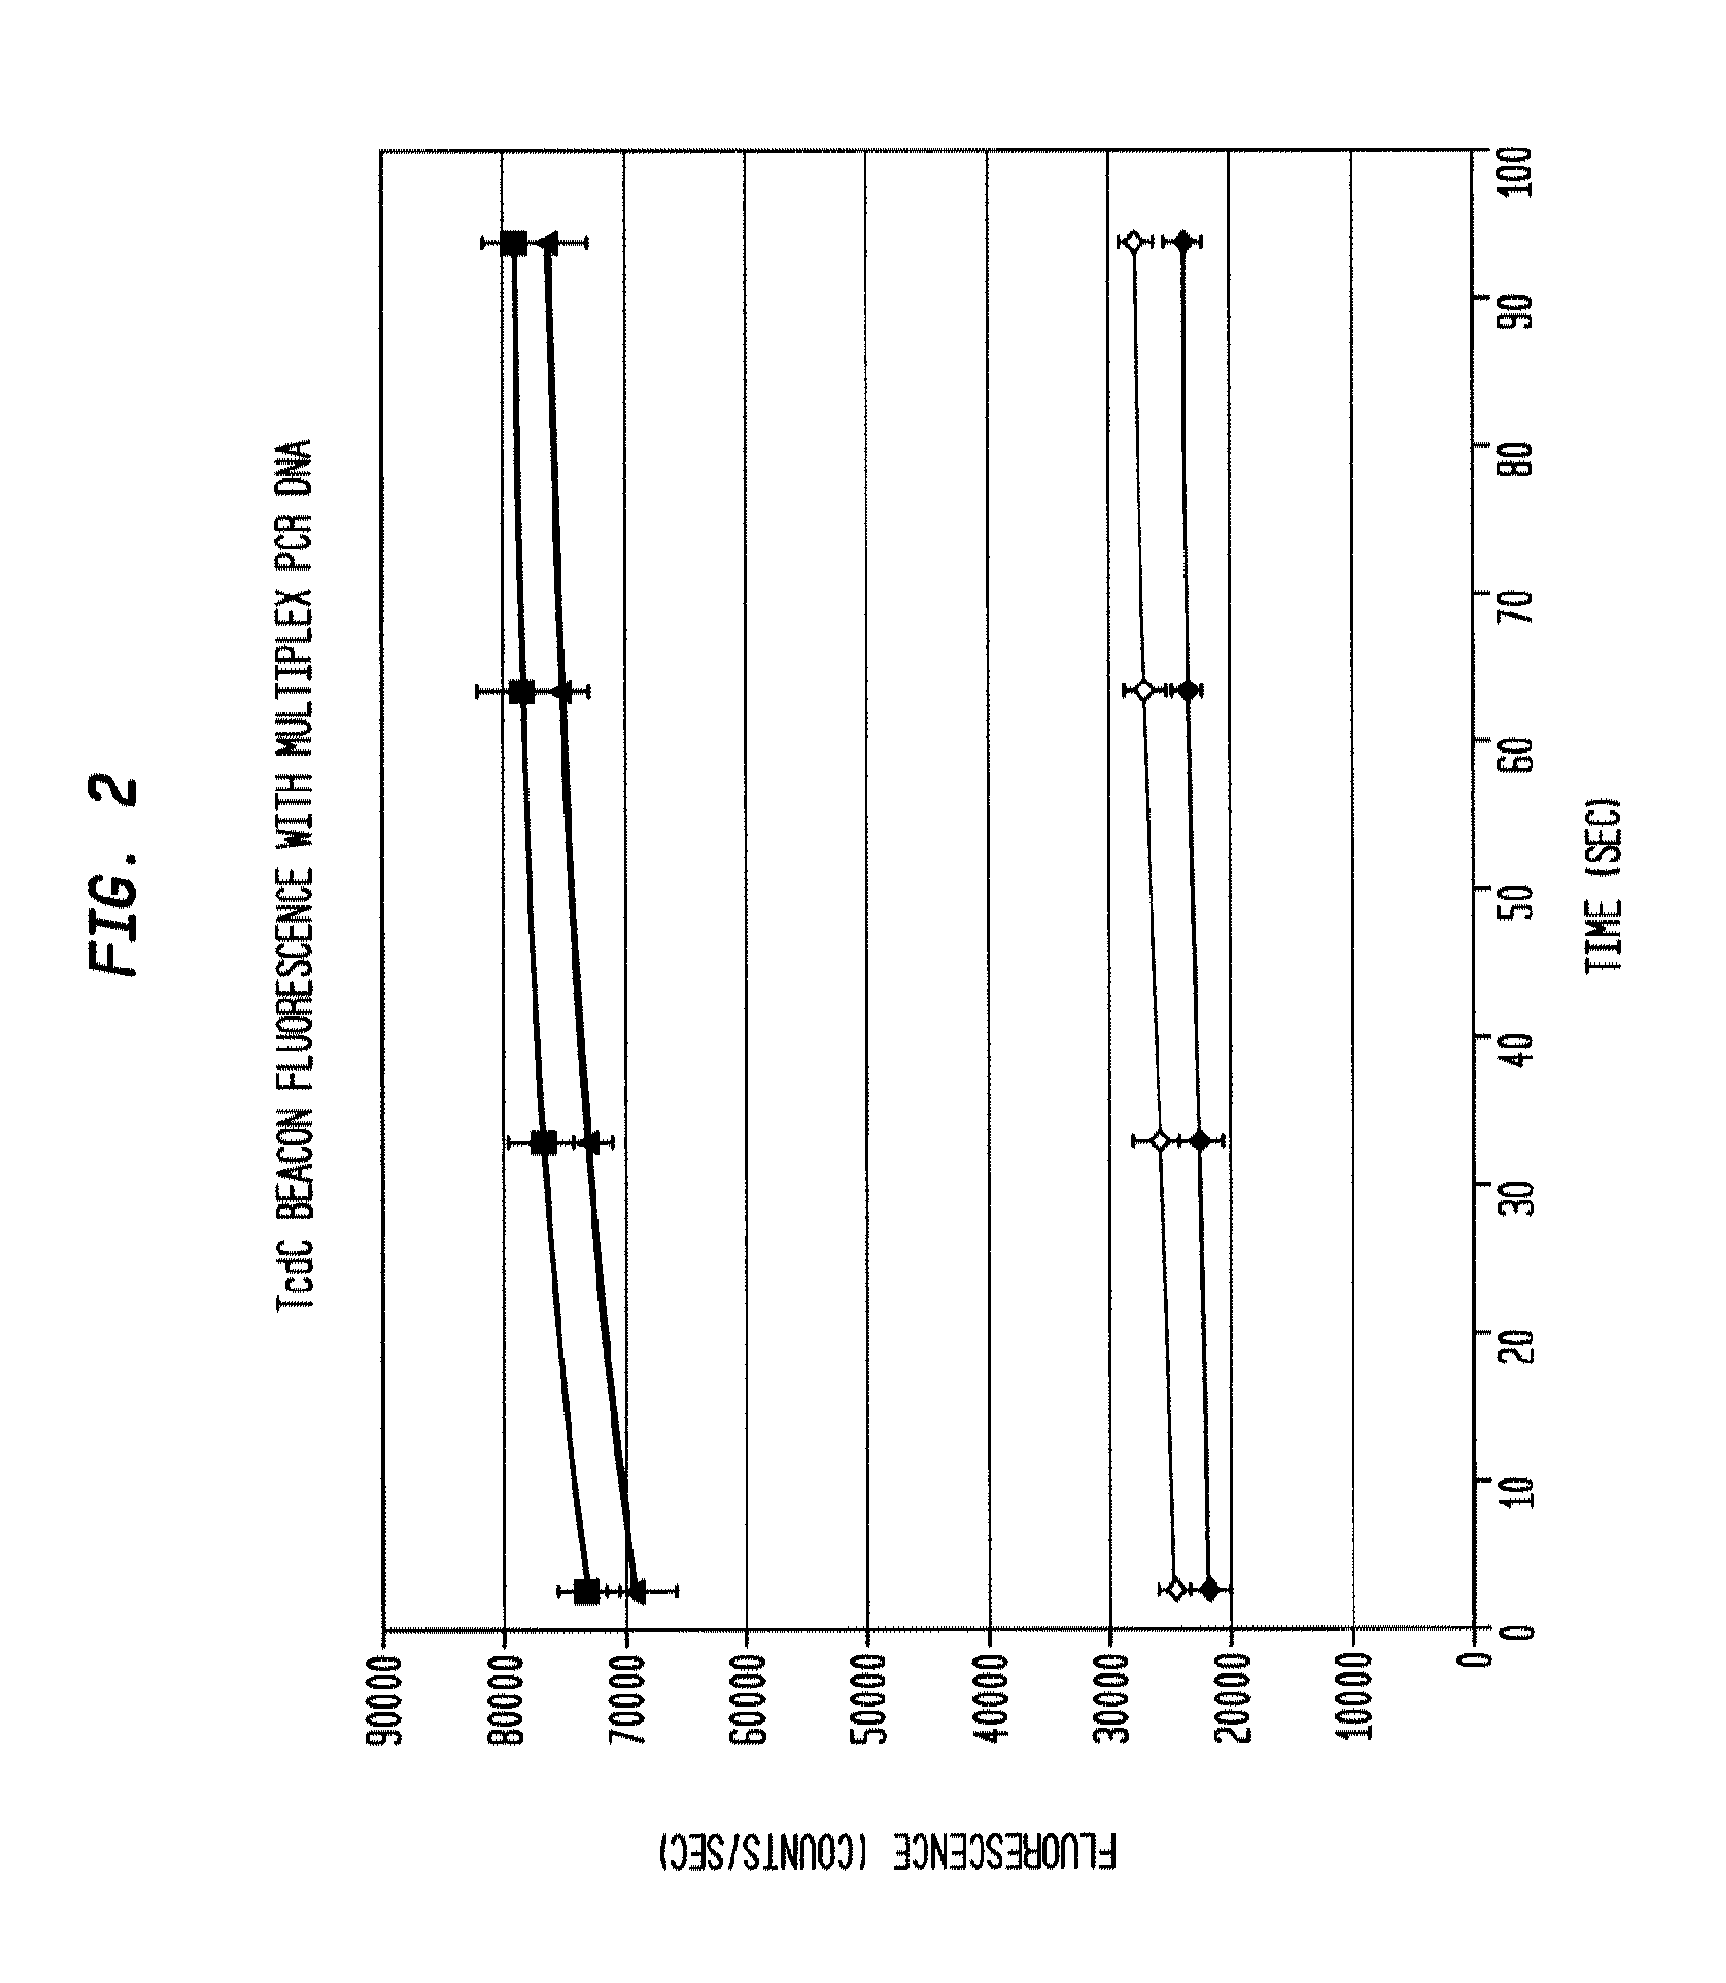 Simultaneous quantitative multiple primer detection of clostridium difficile